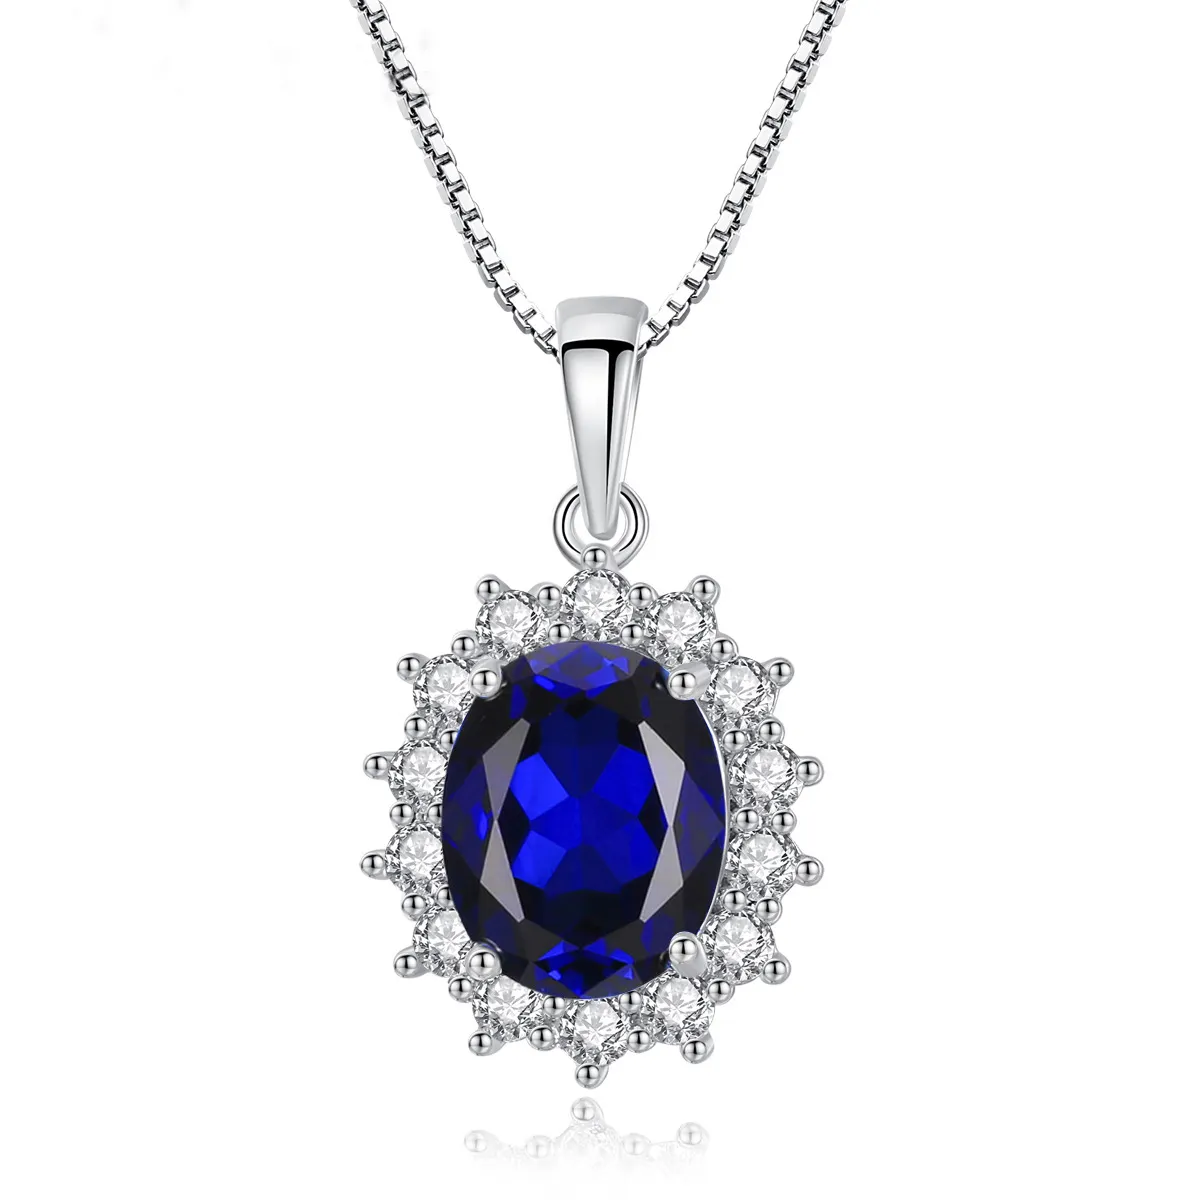 Gioielli di moda collana in argento Sterling 925 con pietre preziose ciondolo lussuoso topazio zaffiro blu principessa Diana Solid